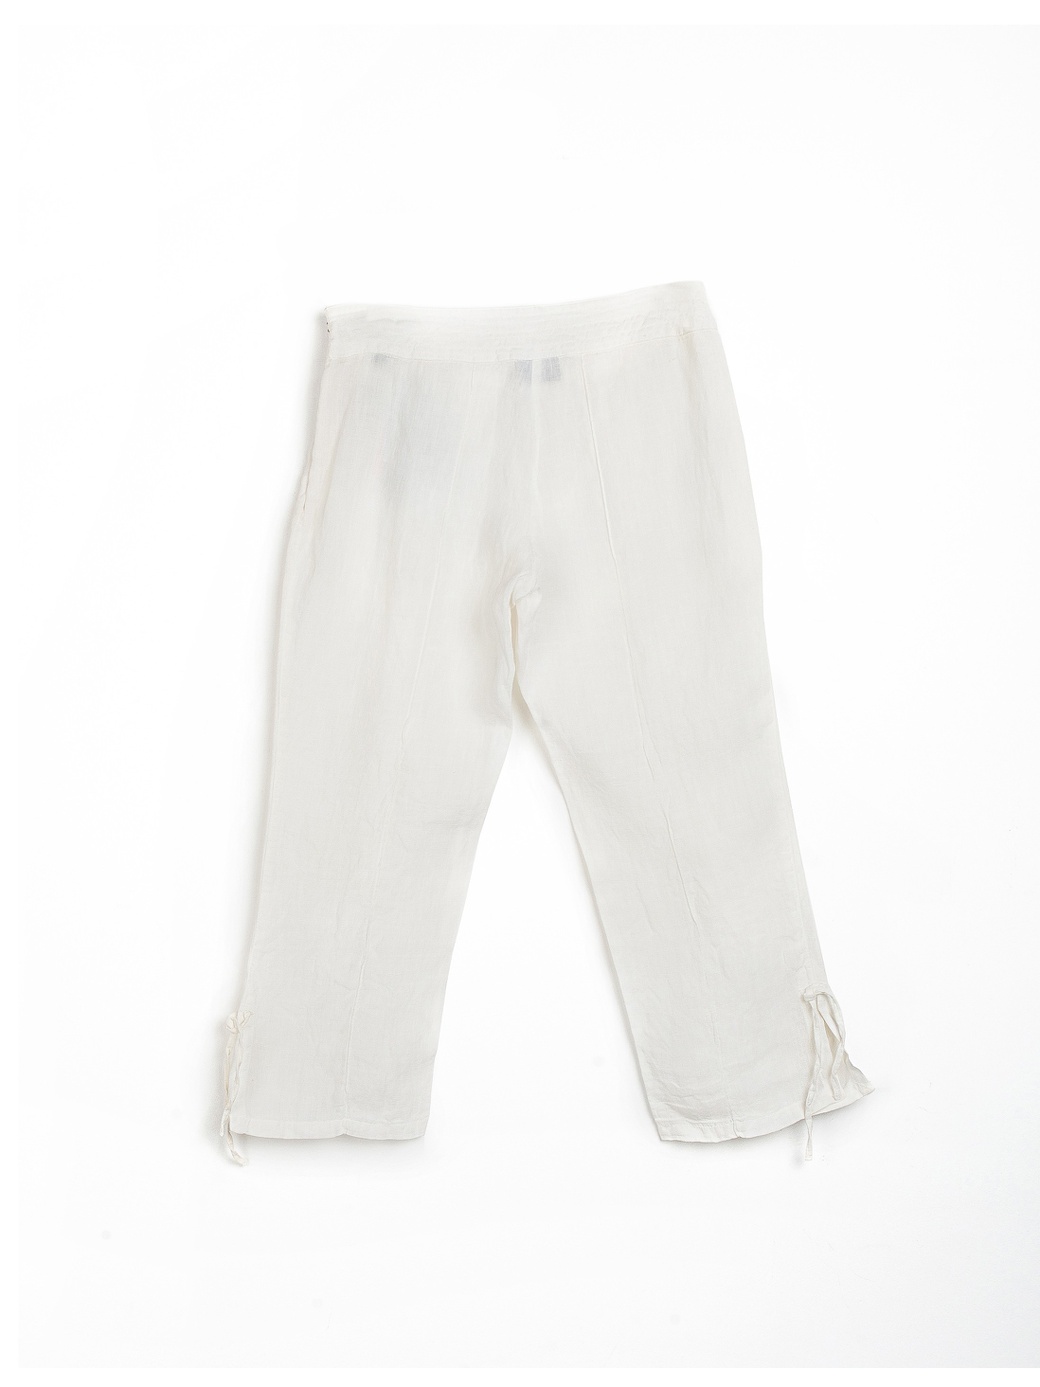 Капри Trussardi Jeans , белый, 42 фото